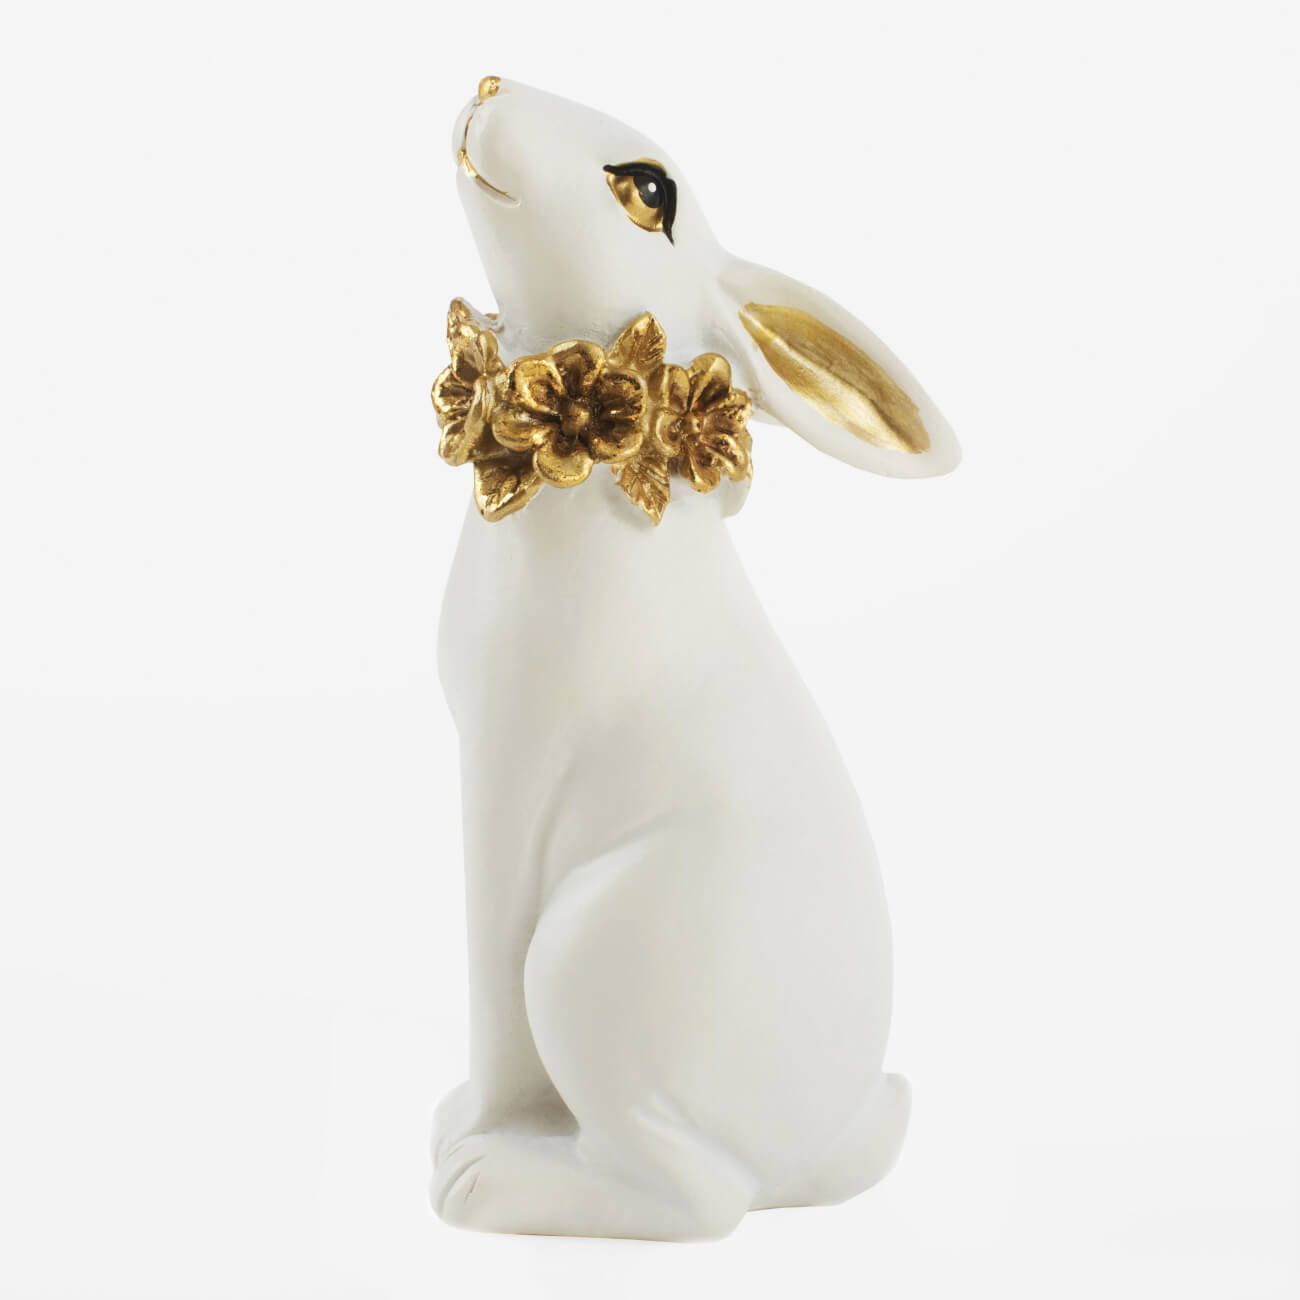 статуэтка с подсветкой 13 см фарфор p белая кролик с ами easter Статуэтка, 13 см, полирезин, бело-золотистая, Кролик с цветочным ожерельем, Easter gold